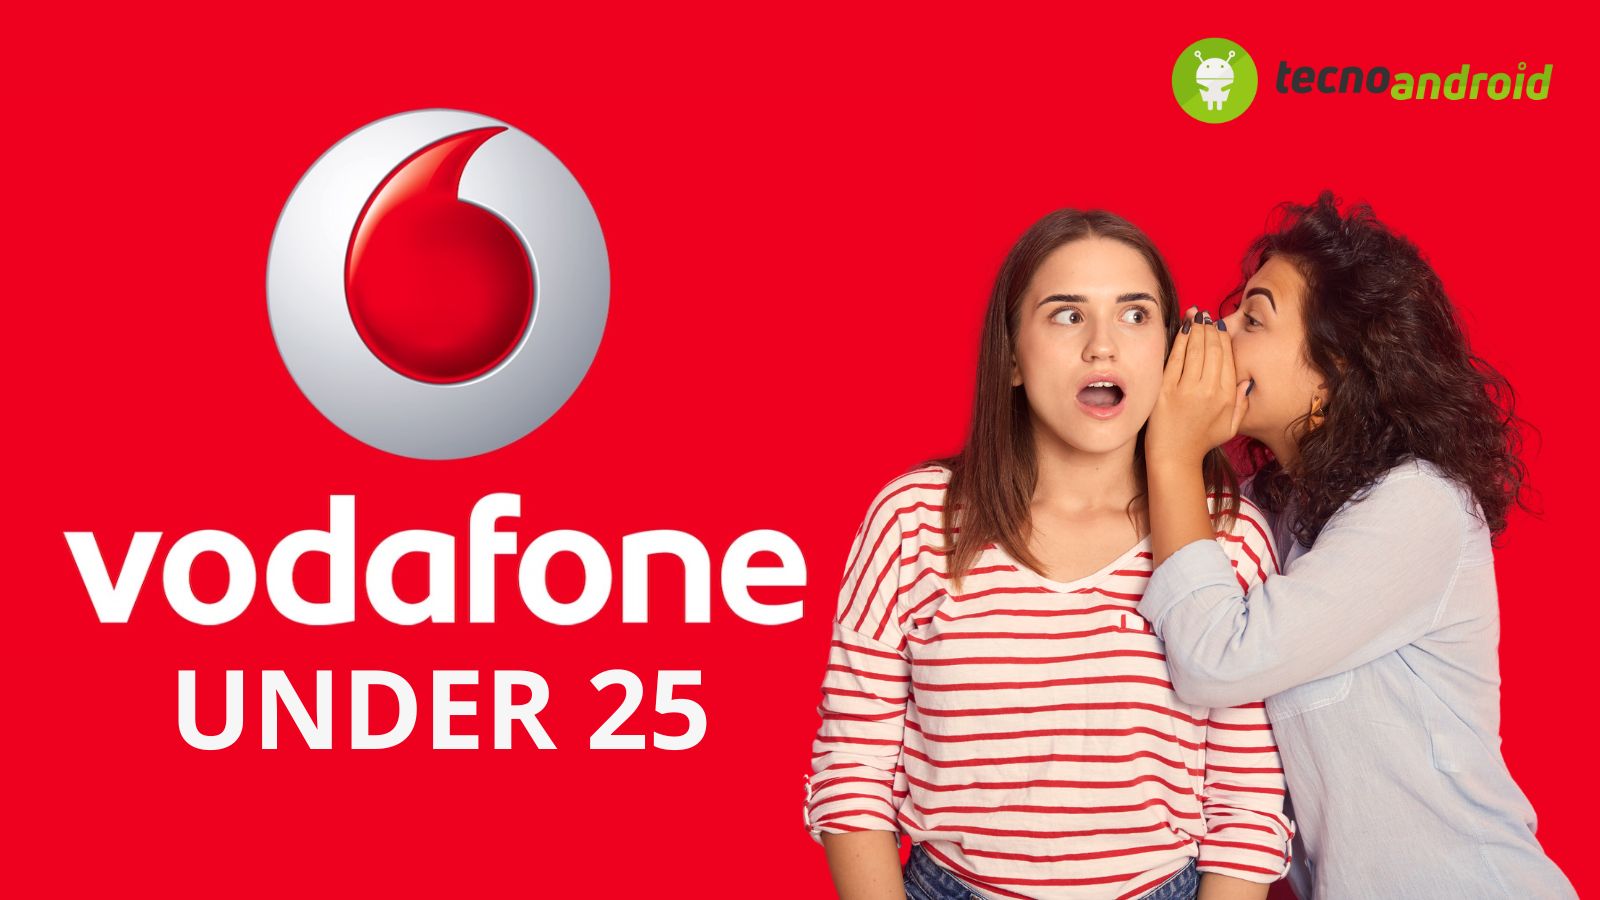 Vodafone offerta under 25